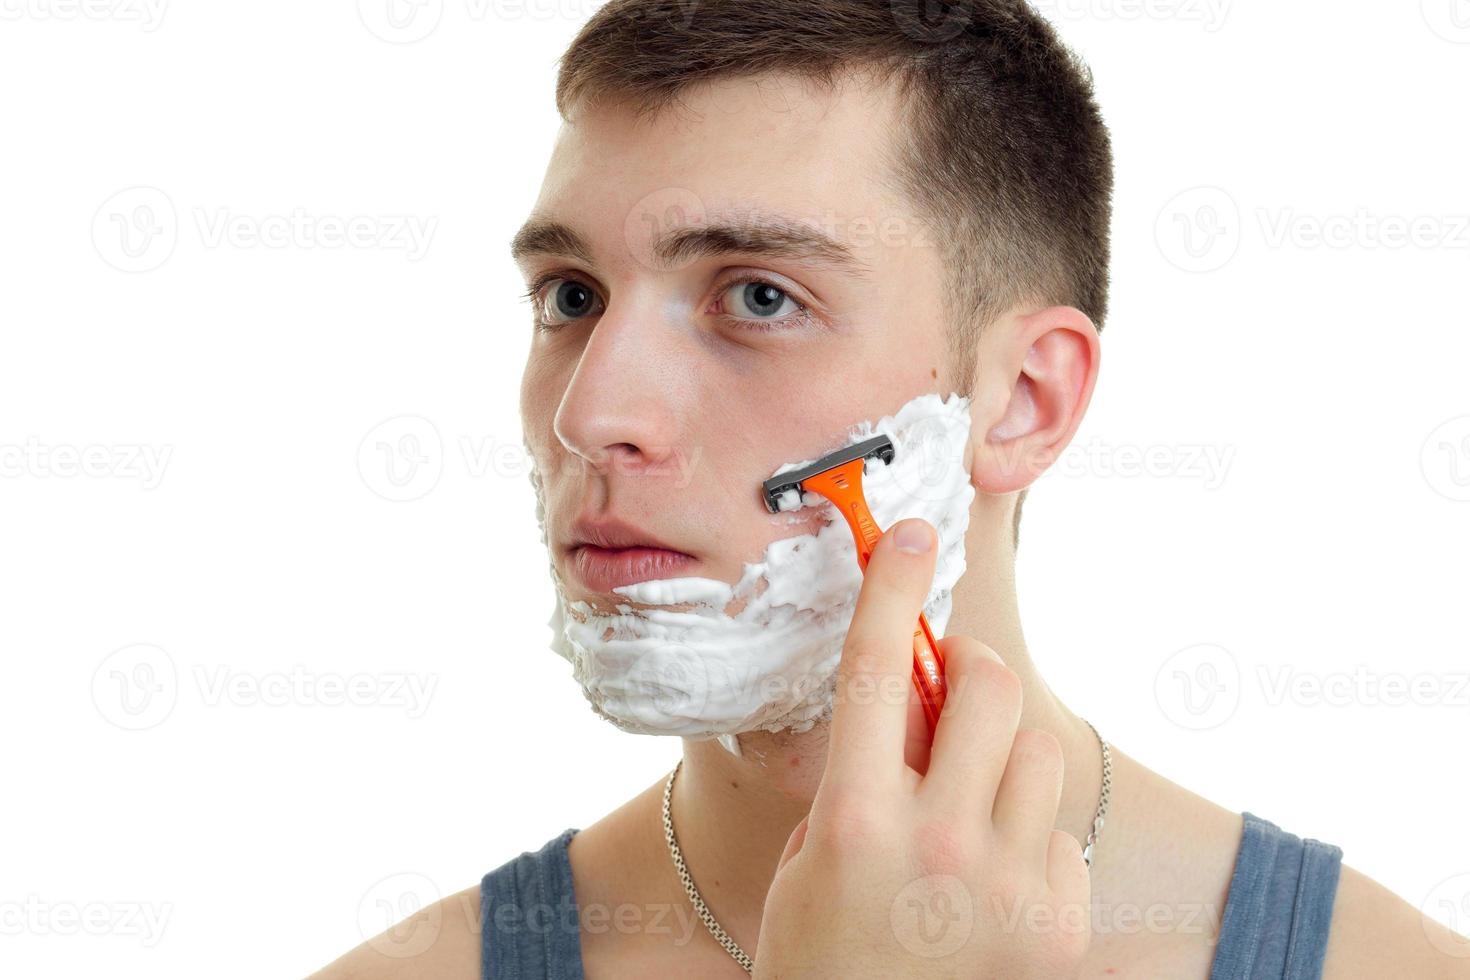 retrato de um jovem bonito com espuma no rosto que raspa cuidadosamente sua máquina de barba close-up foto